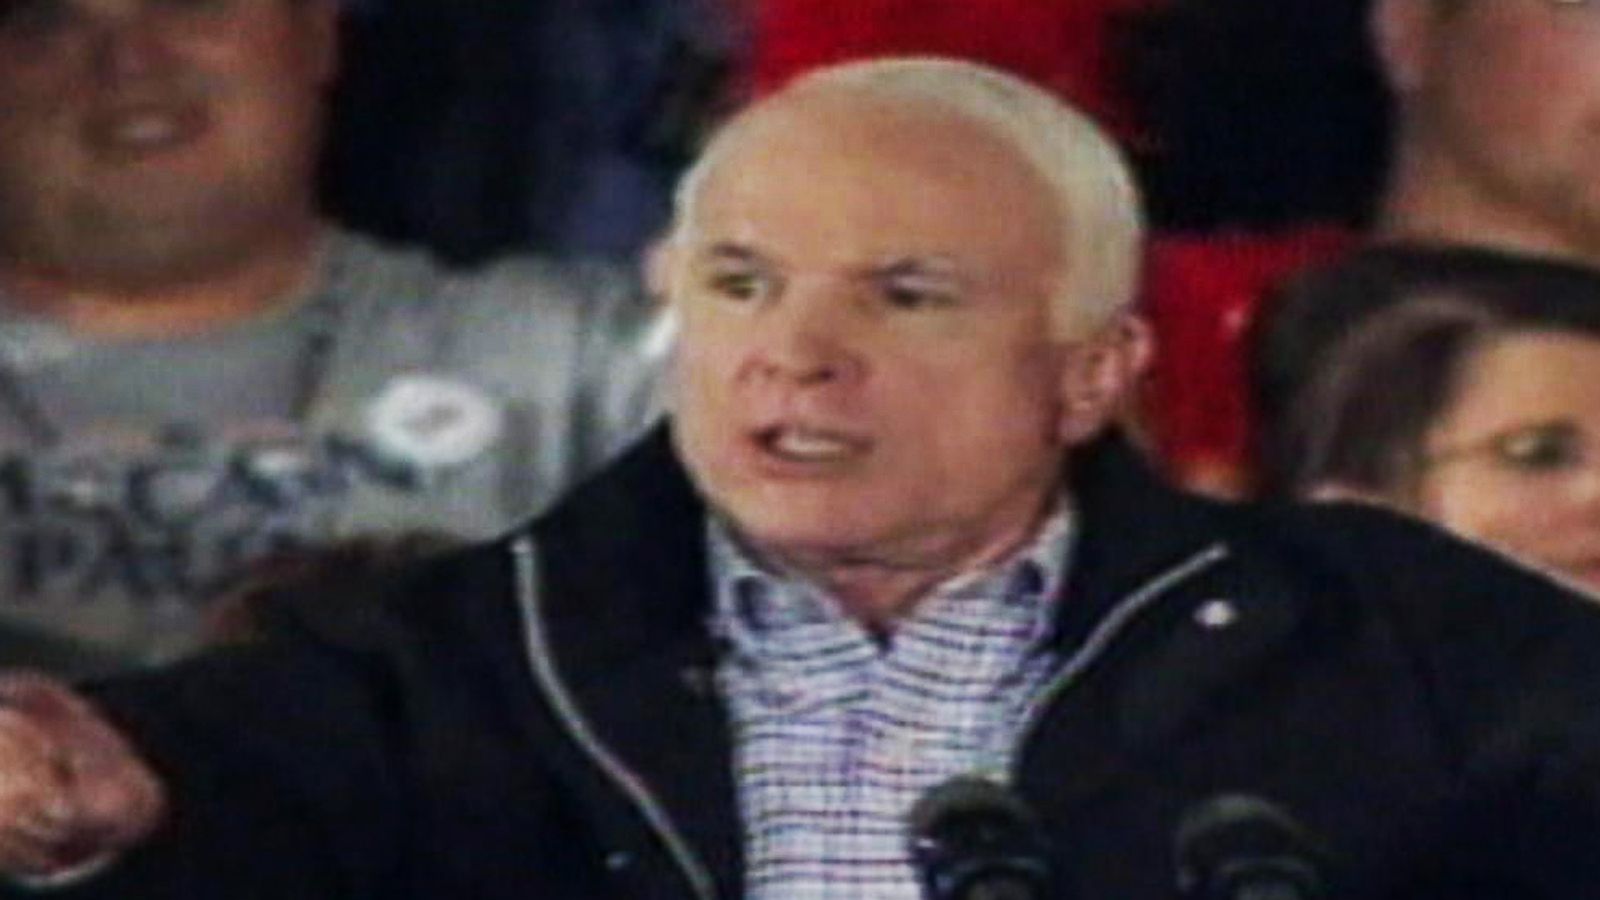 9 Days: McCain Campaign Denies Infighting Over Sarah Palin